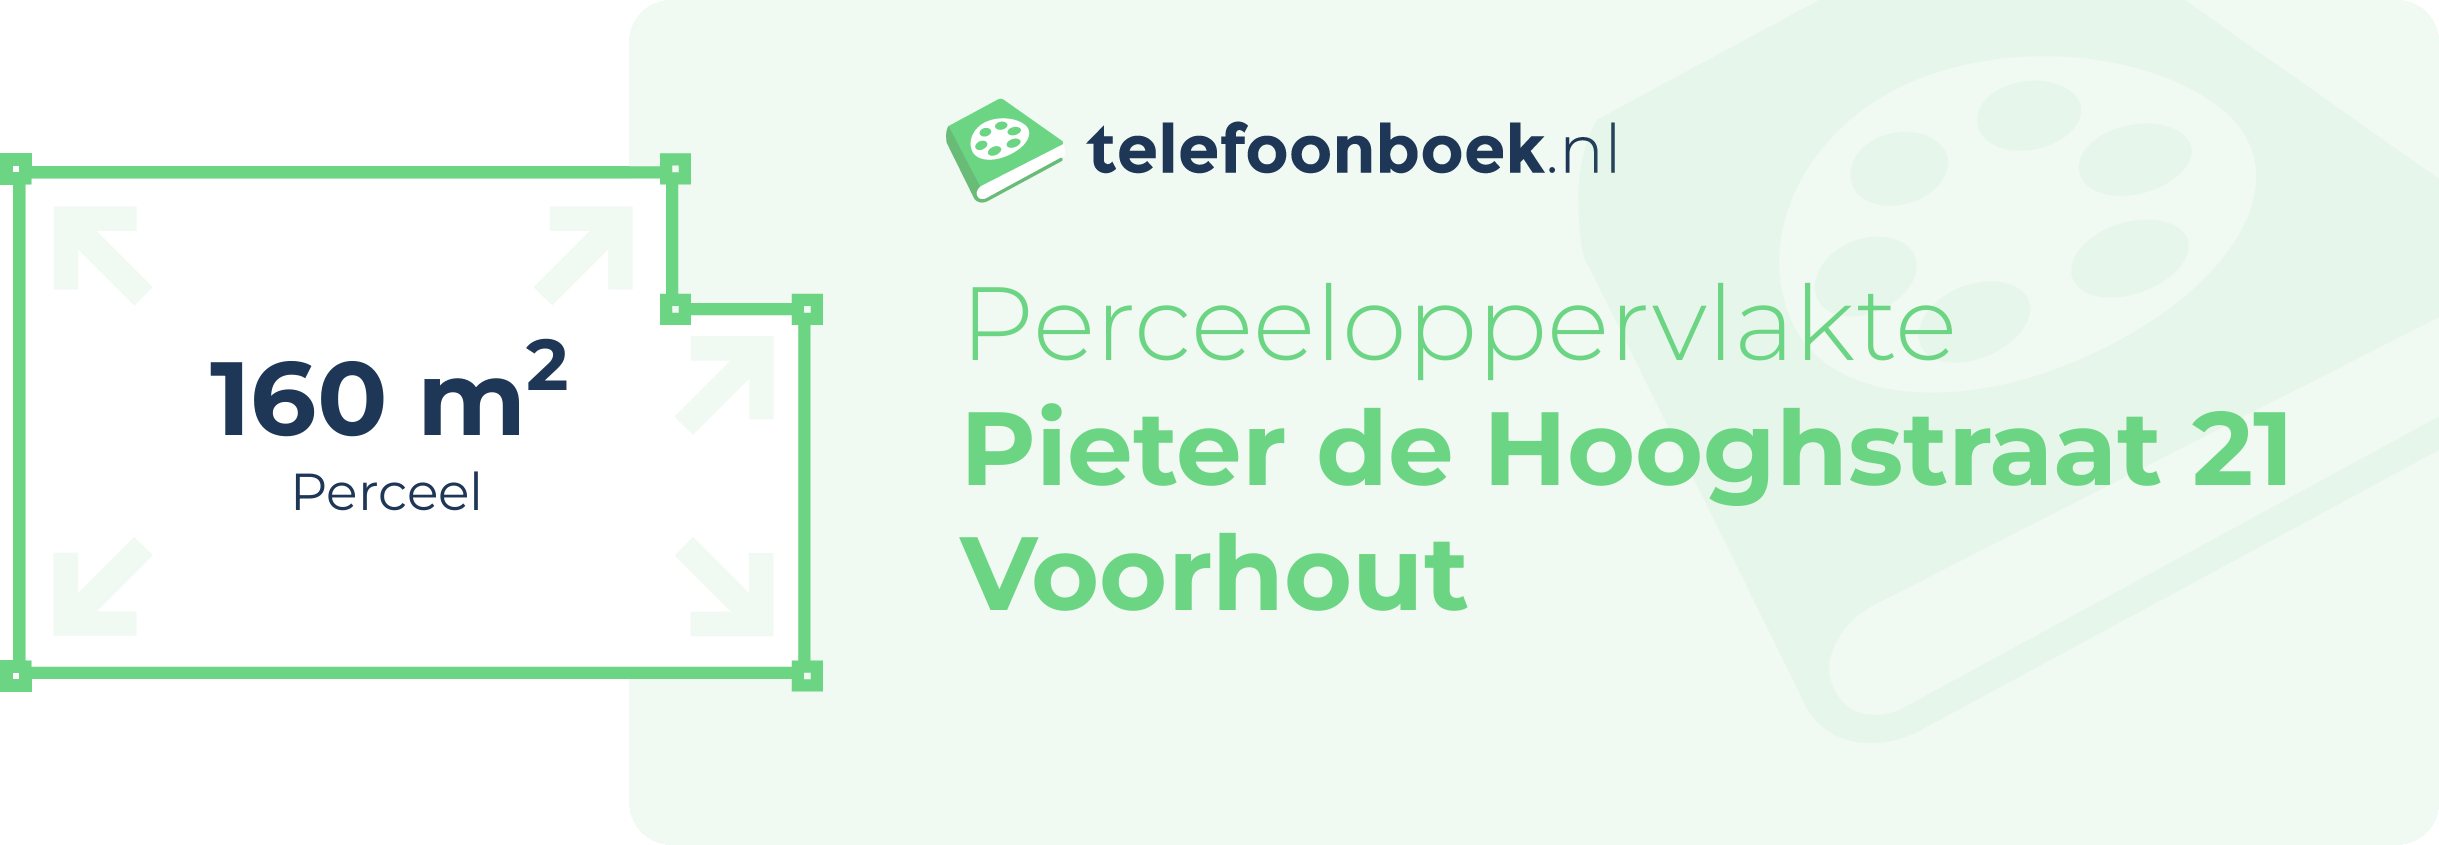 Perceeloppervlakte Pieter De Hooghstraat 21 Voorhout